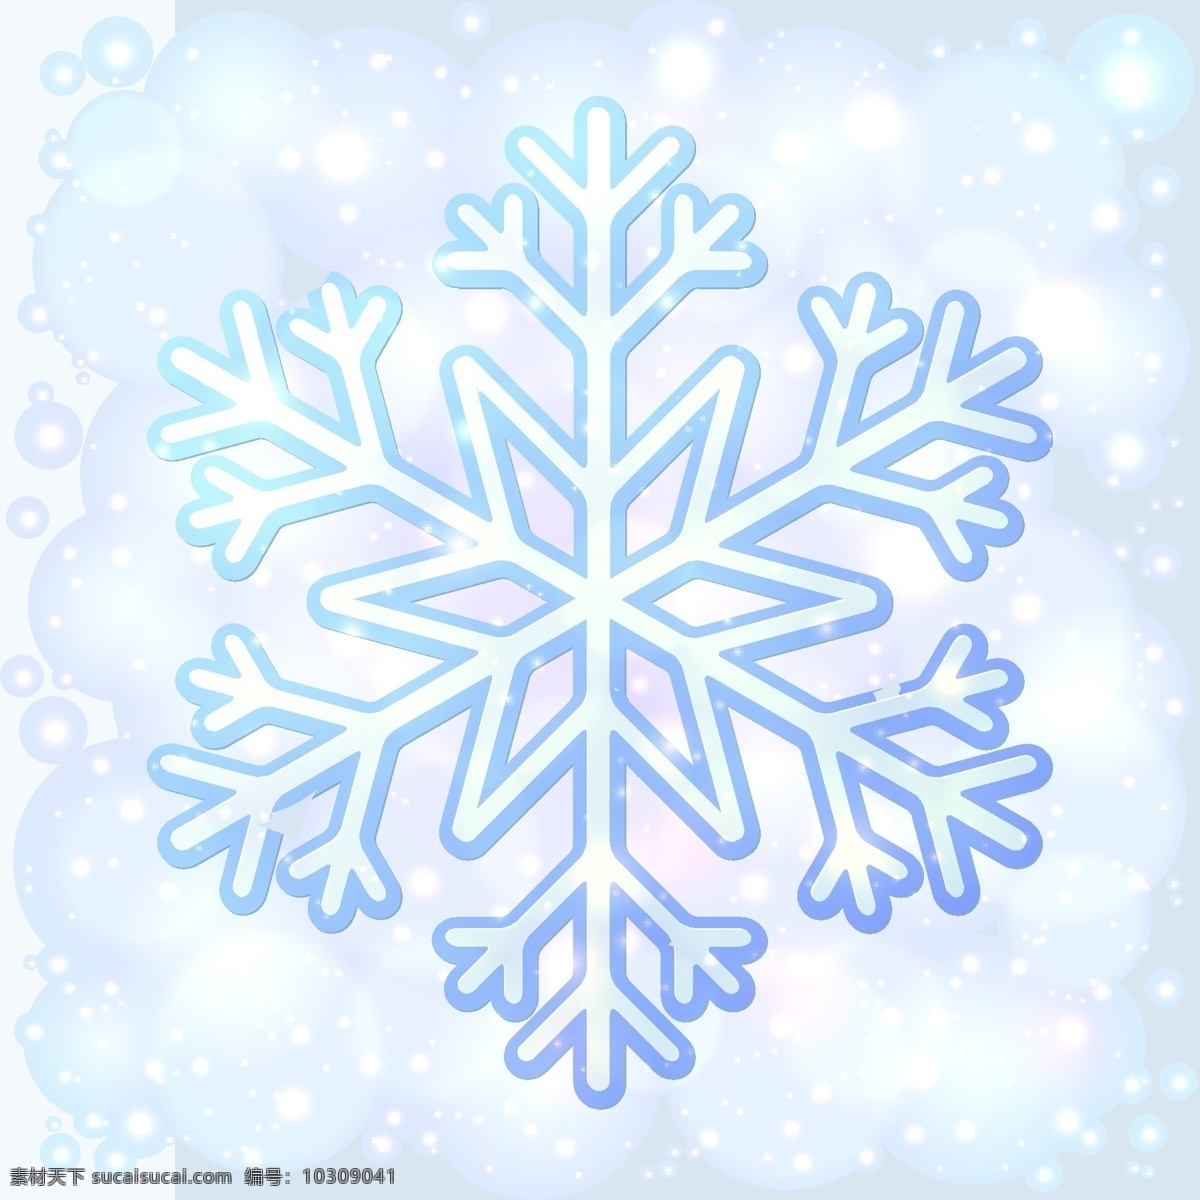 蓝色 冰晶 雪花 背景 冬季 光晕 矢量图 节日素材 圣诞节